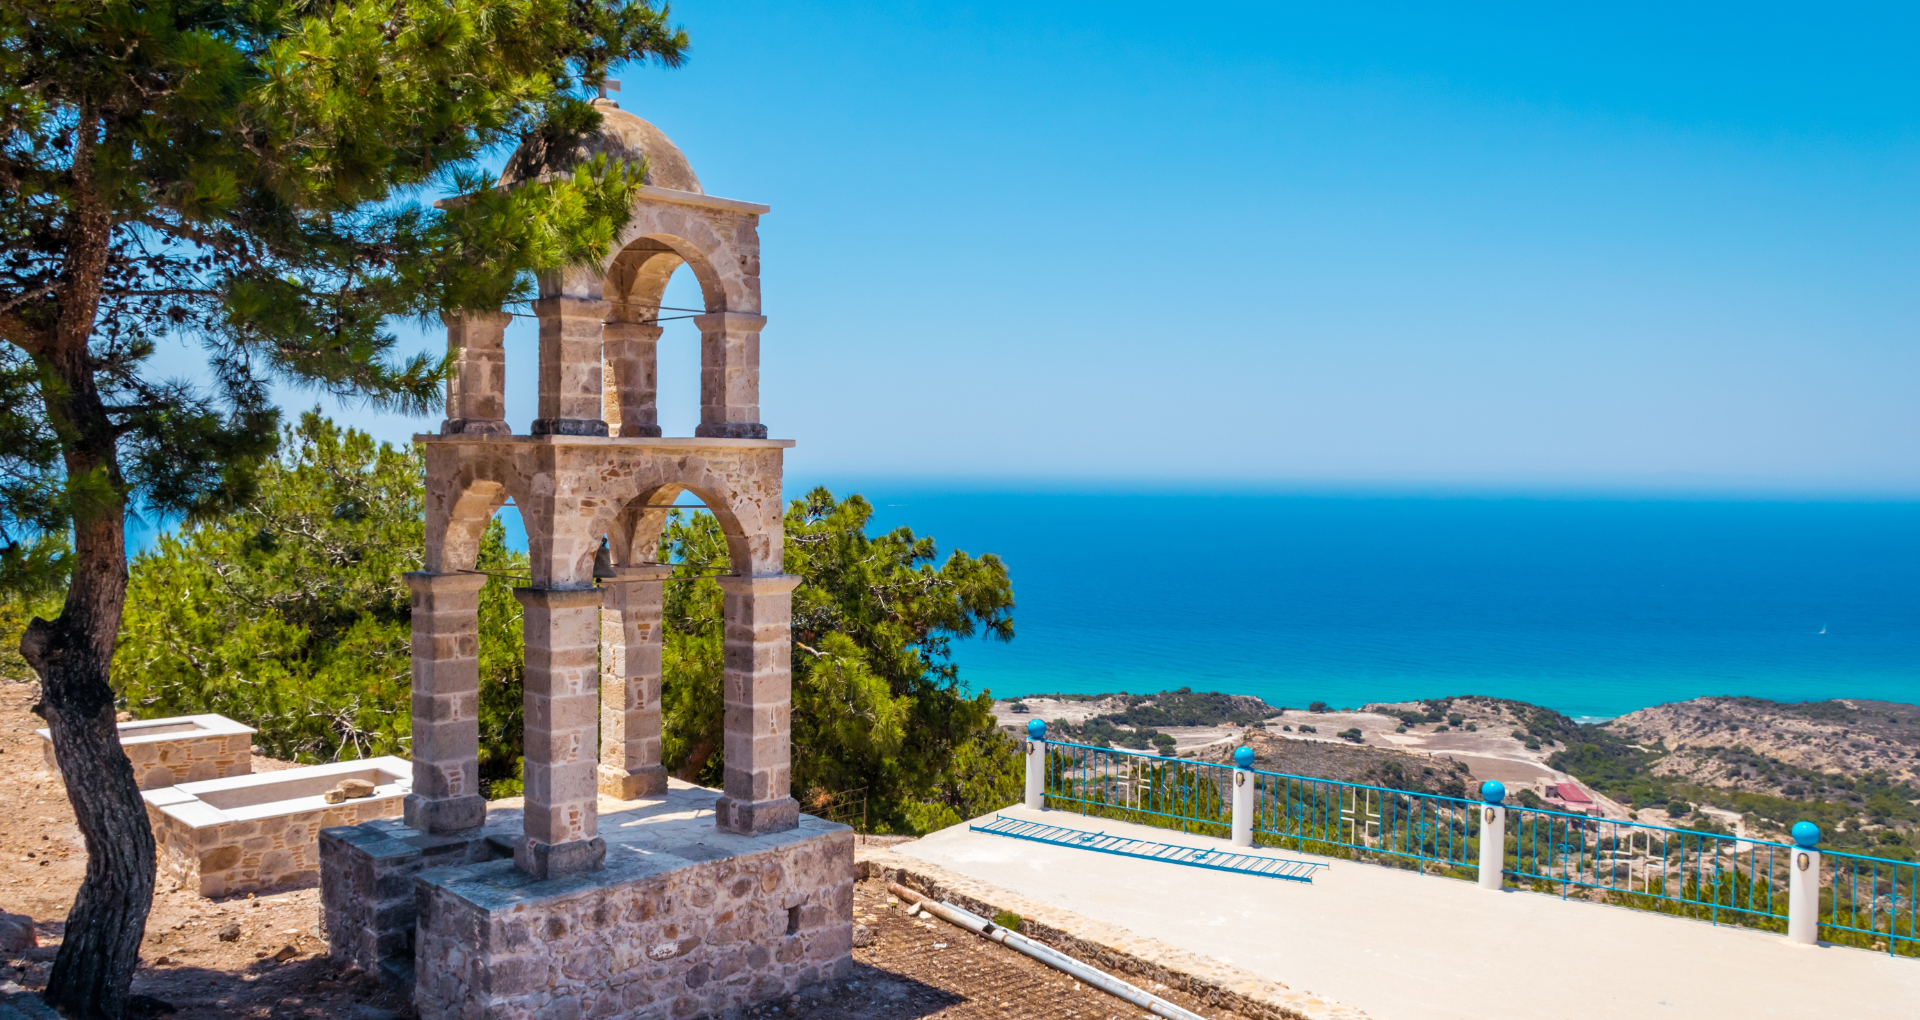 Vue panoramique du clocher du monastère de Saint John avec mer Egée sur l'île de Kos, Grèce